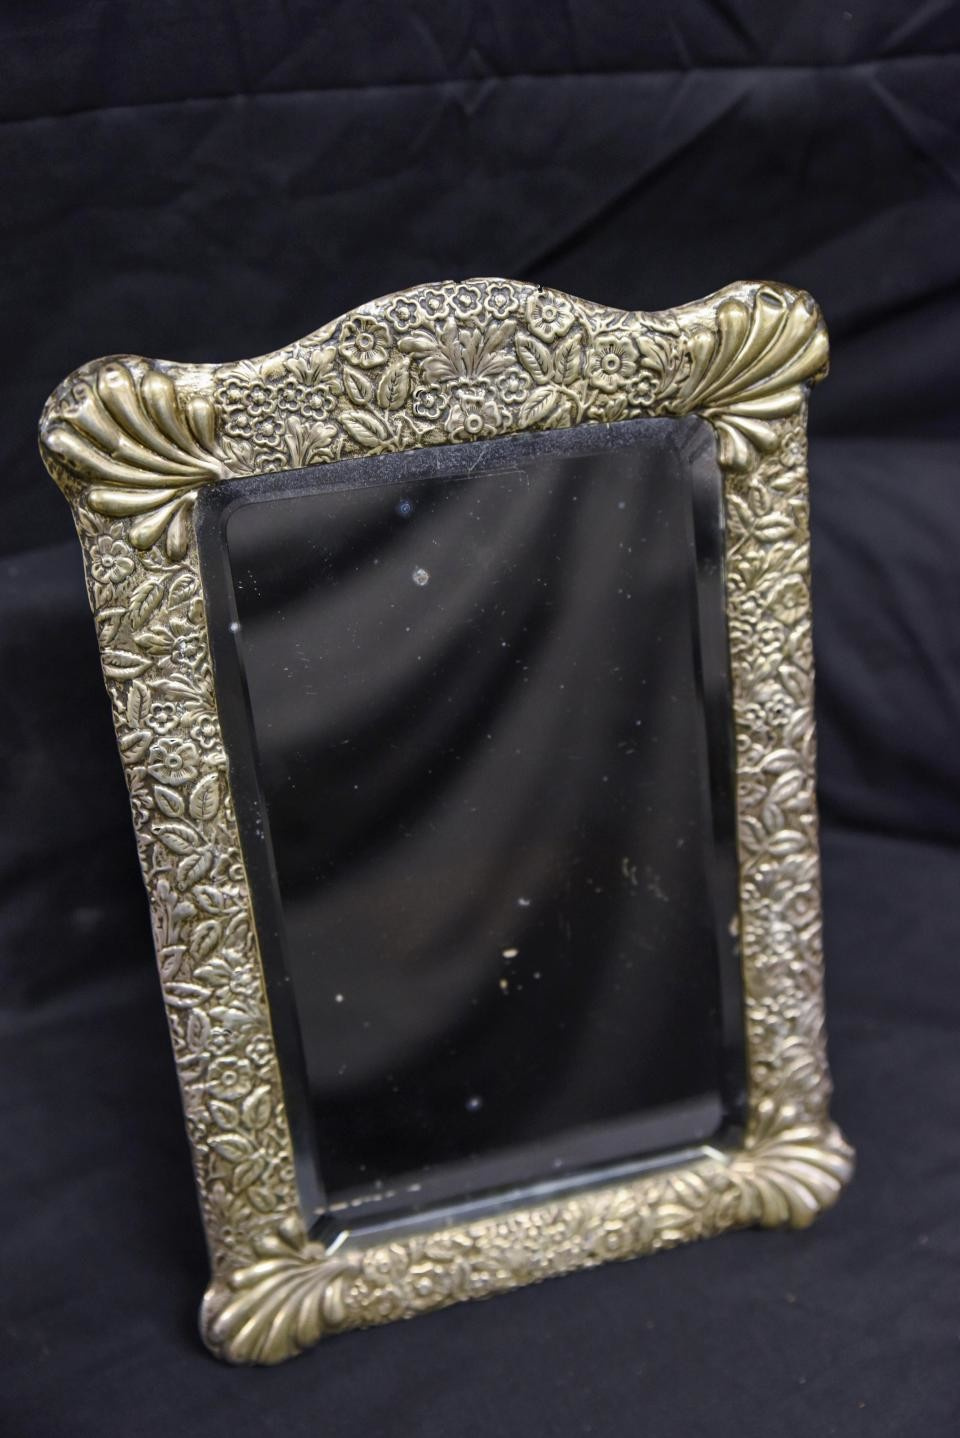 Фото. Начальная цена зеркала капитана Титаника – 10 тысяч долларов